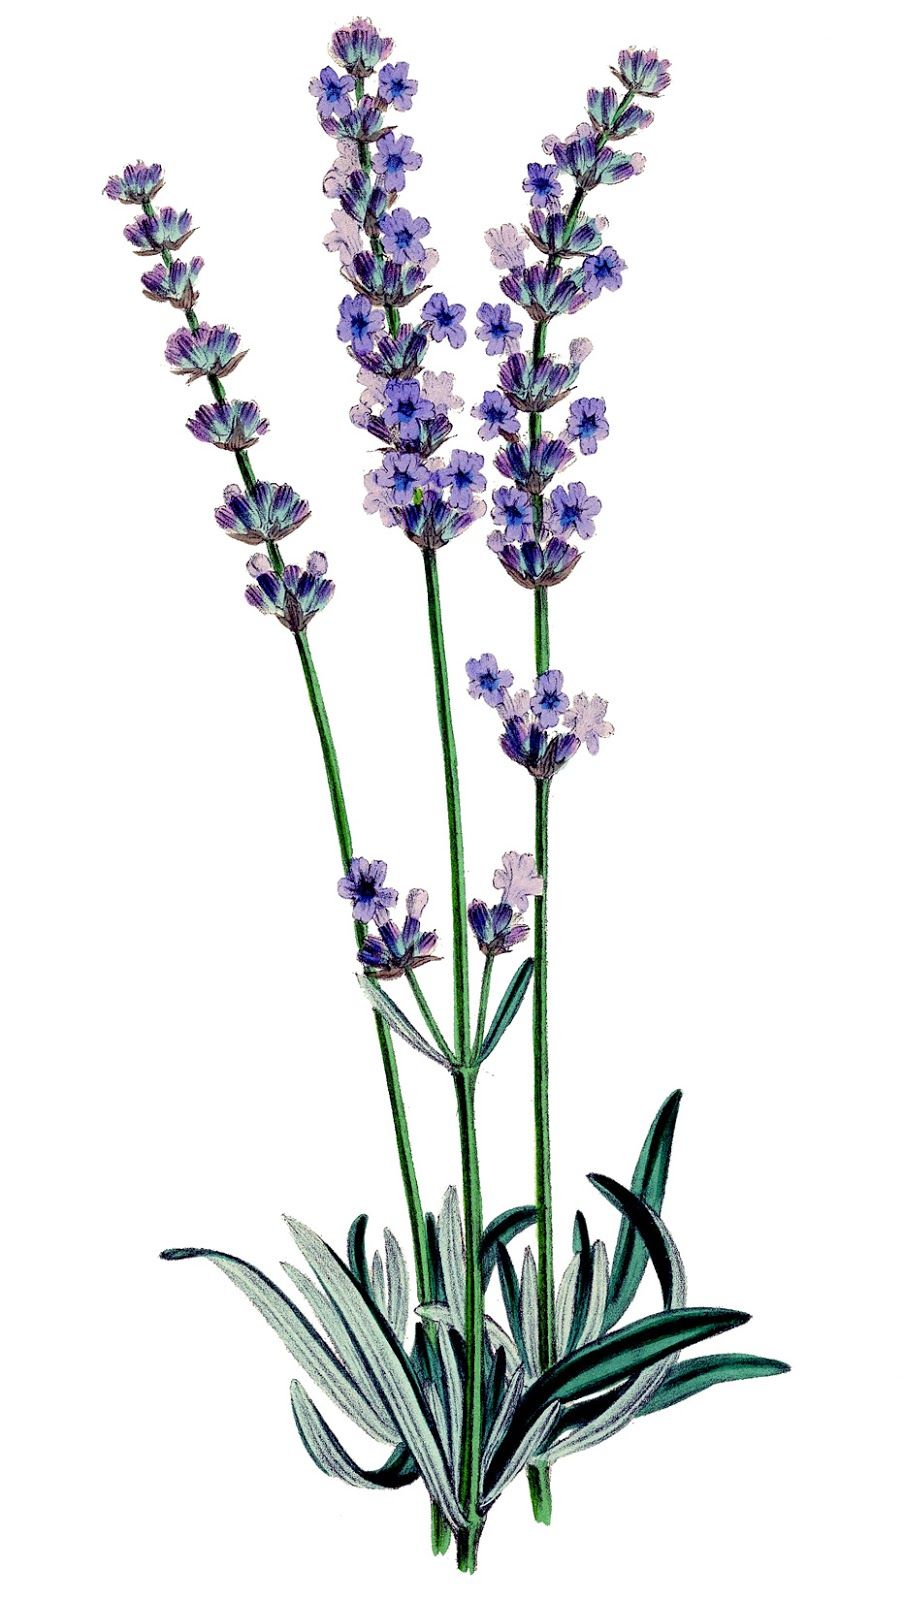 Hintergrund Lavendel - KibrisPDR